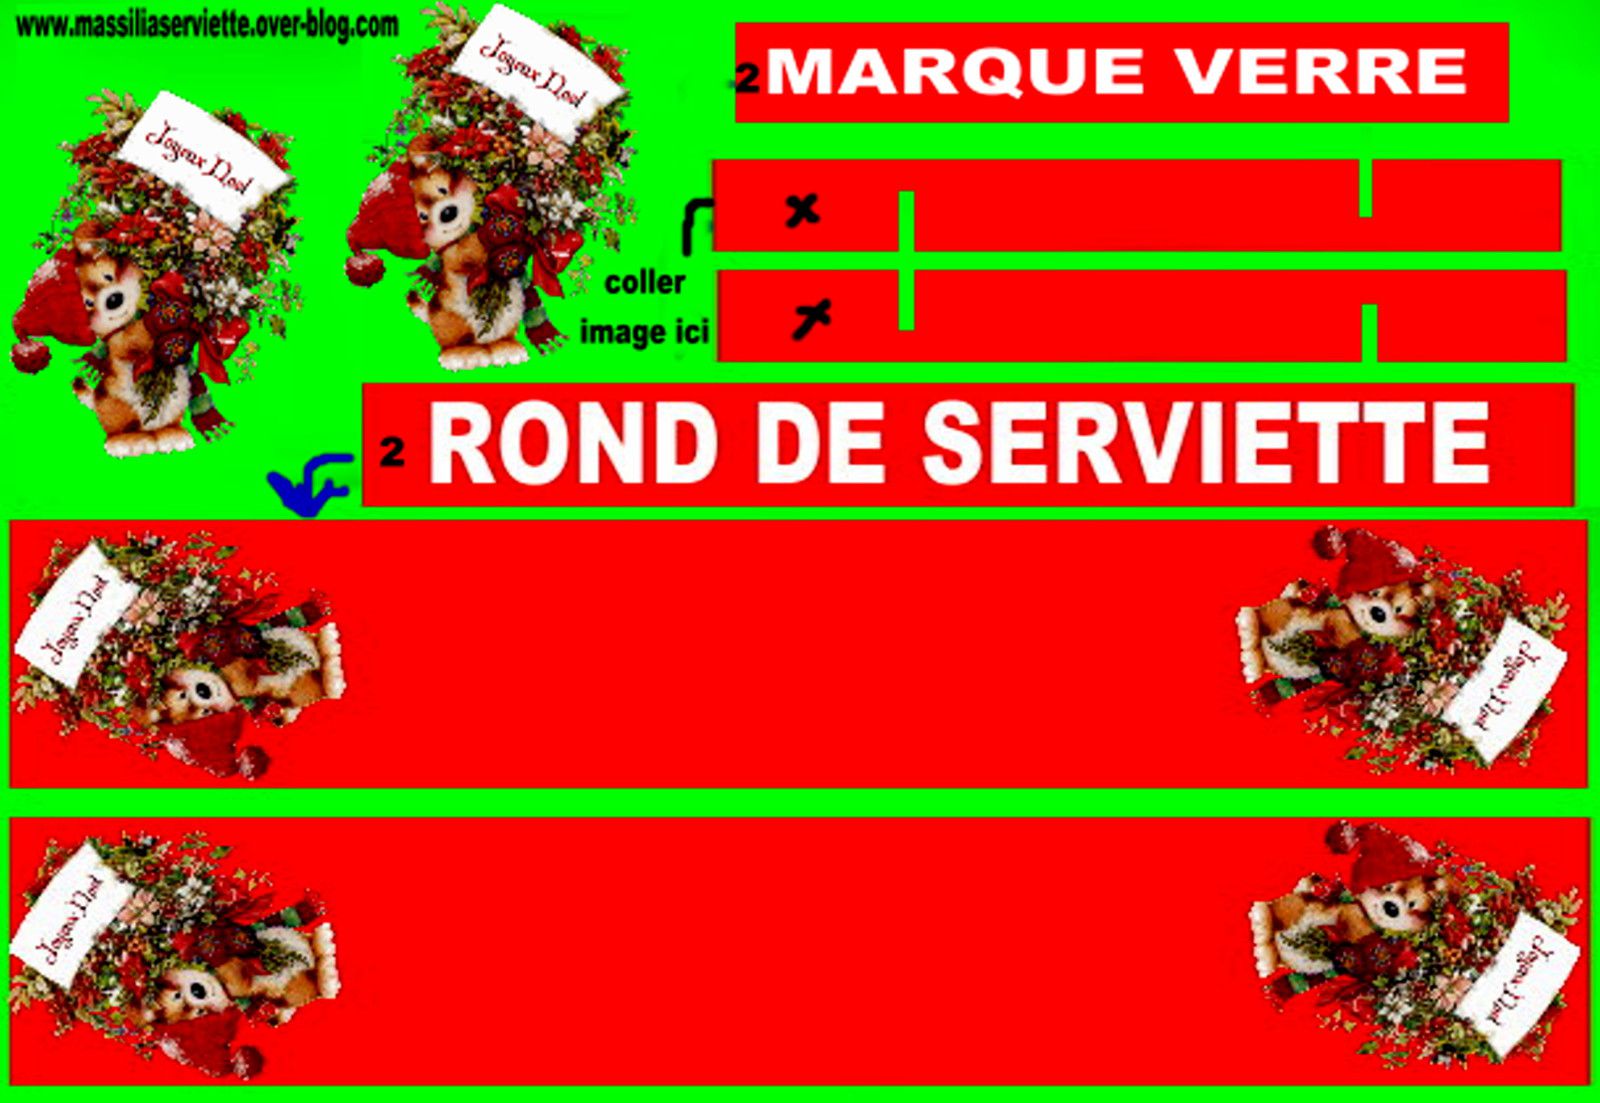 ROND DE SERVIETTE